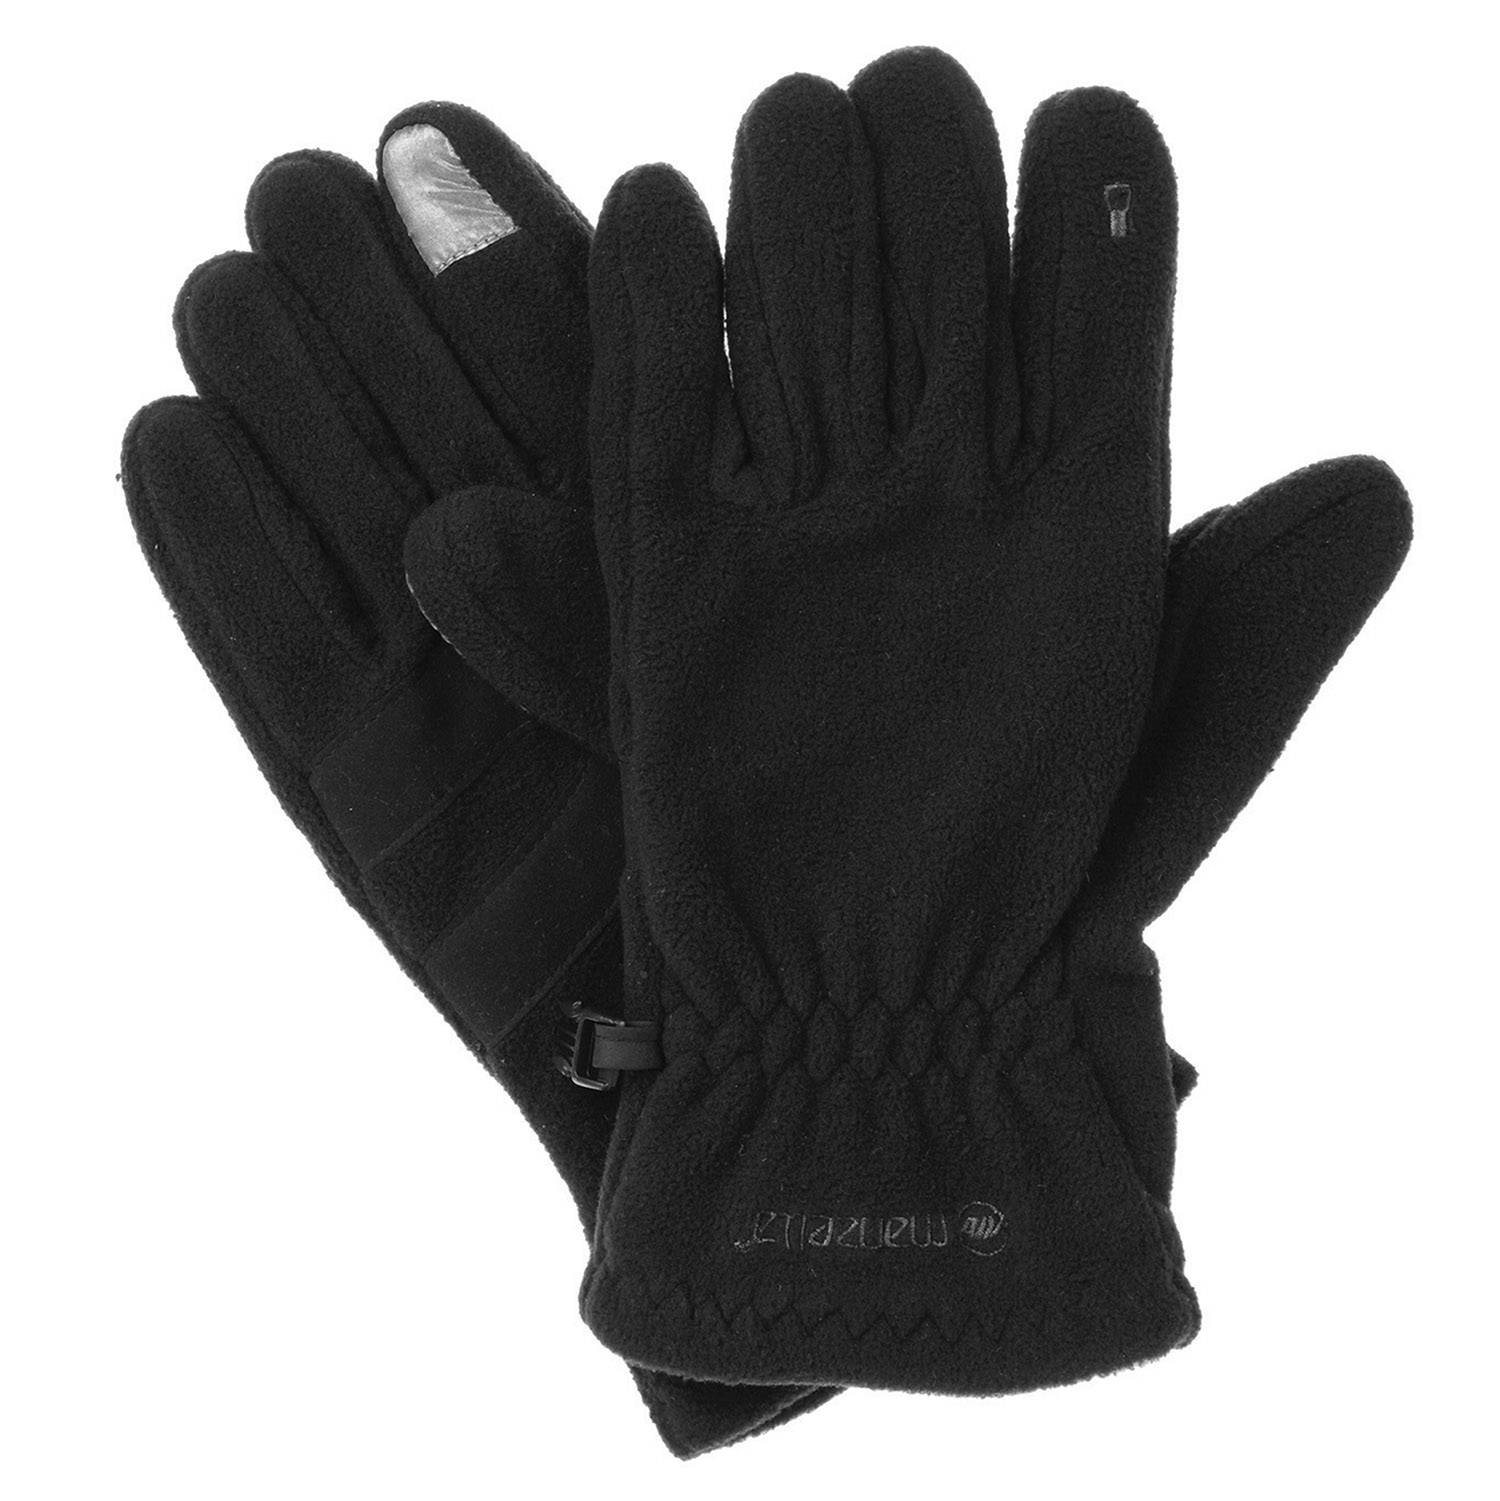 Manzella Stretch Fleece Glove w/ Touch Tip